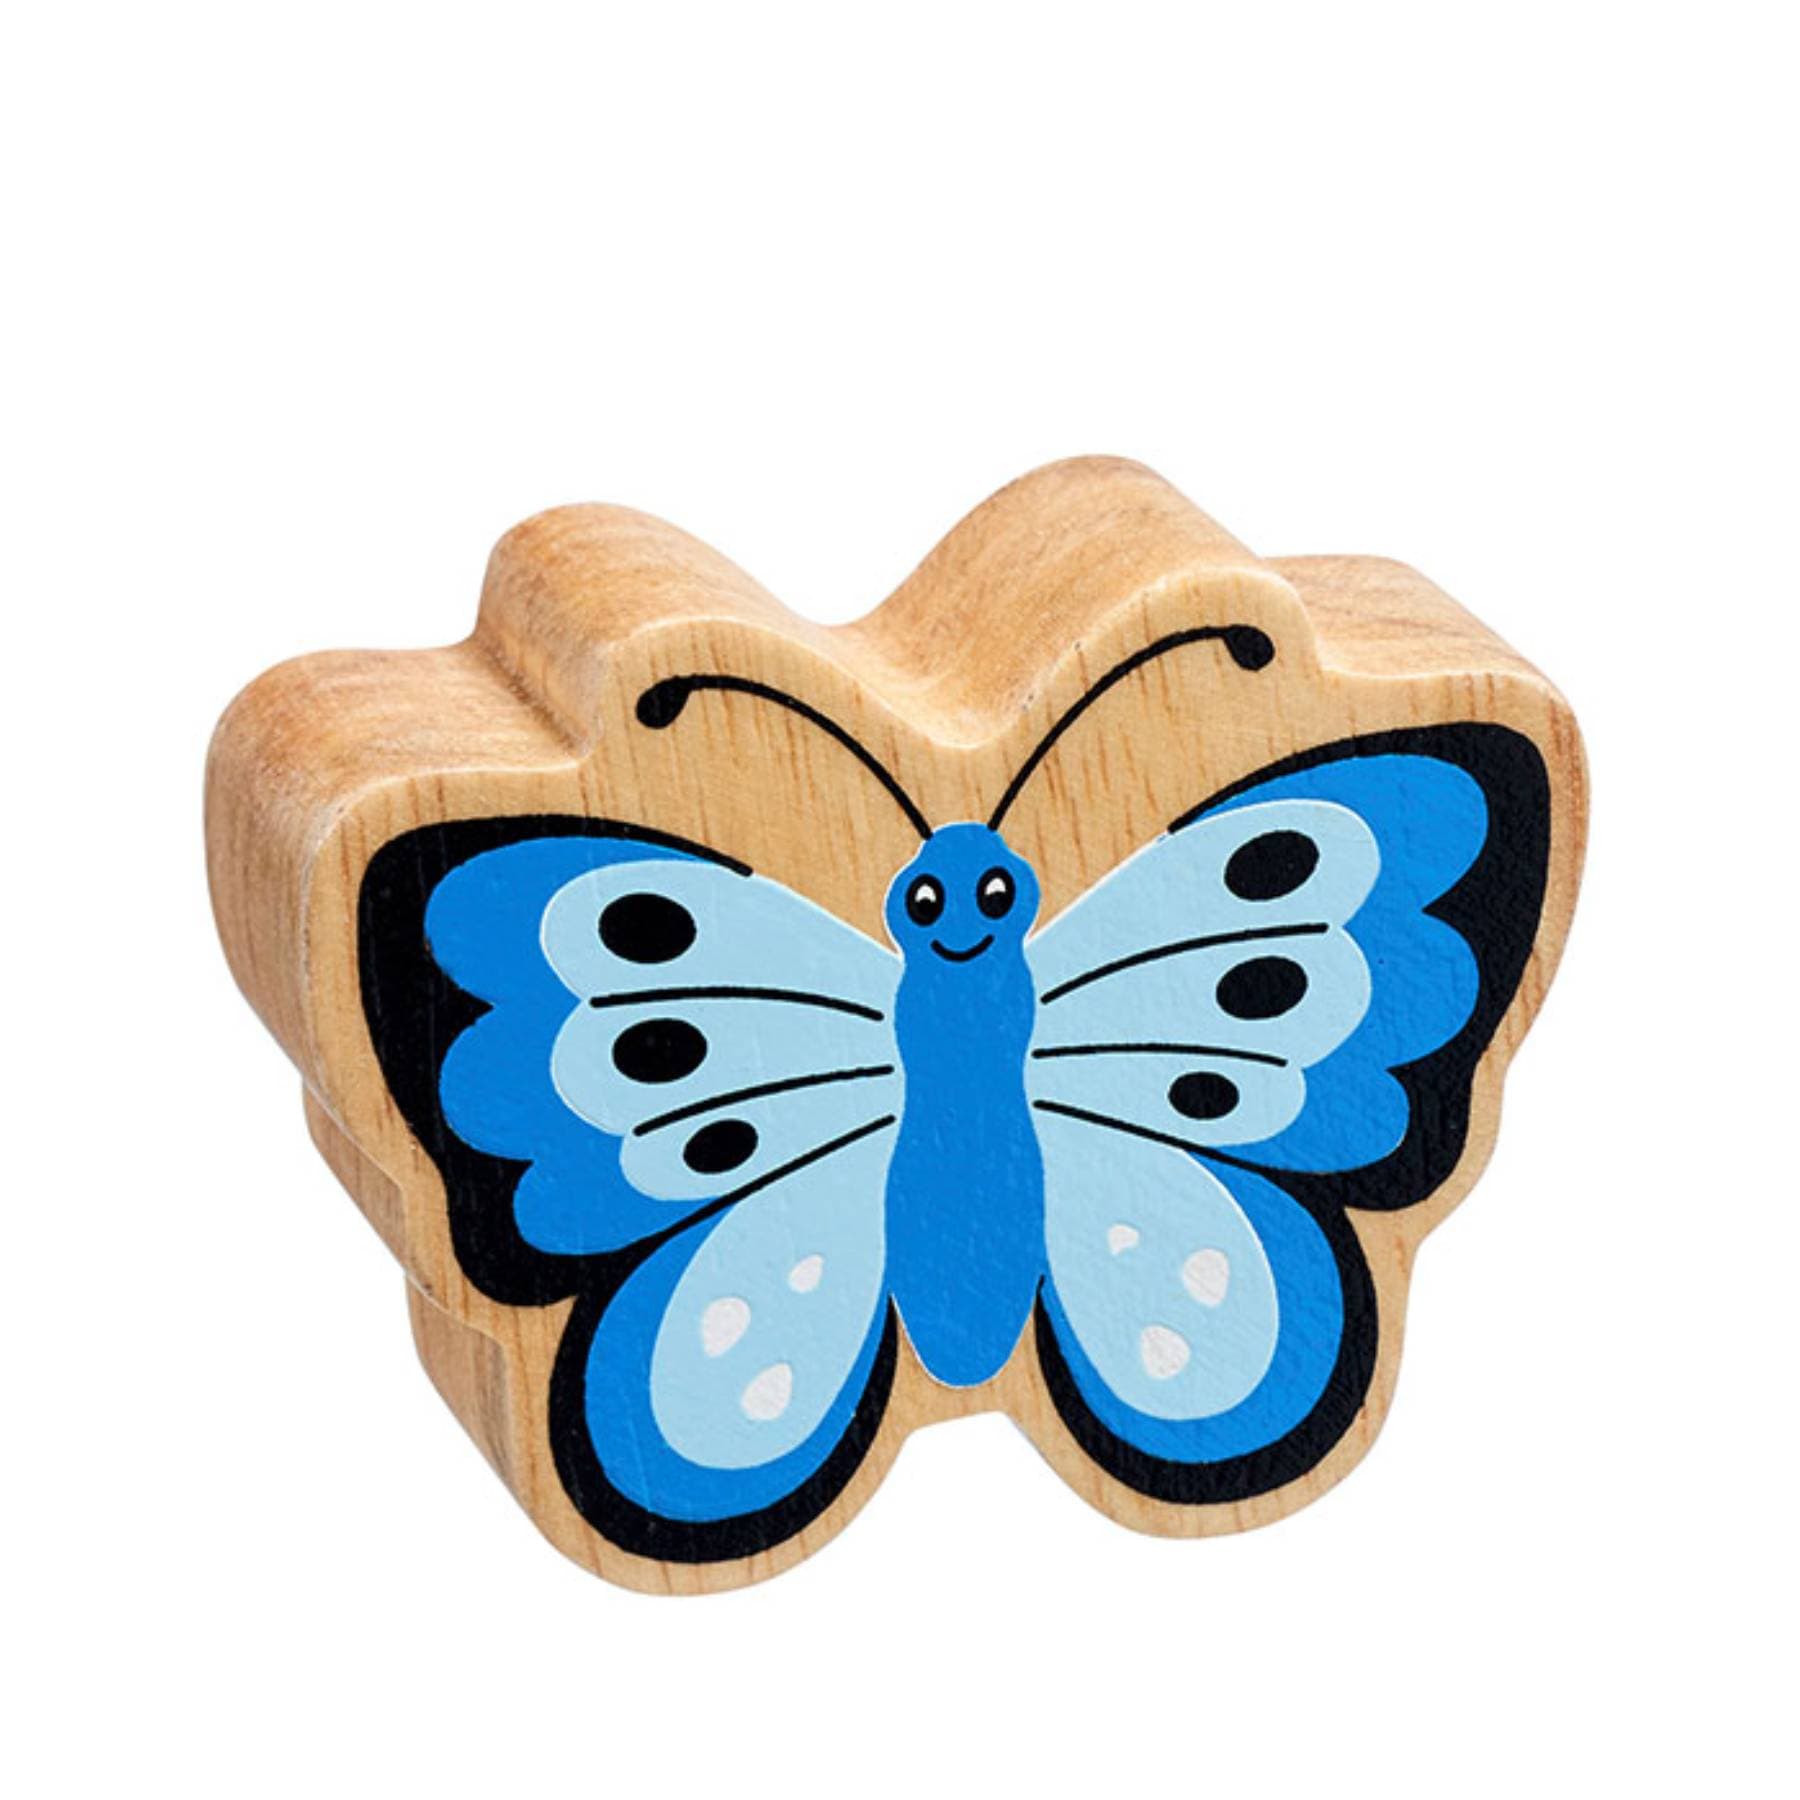 Wooden butterfly figure